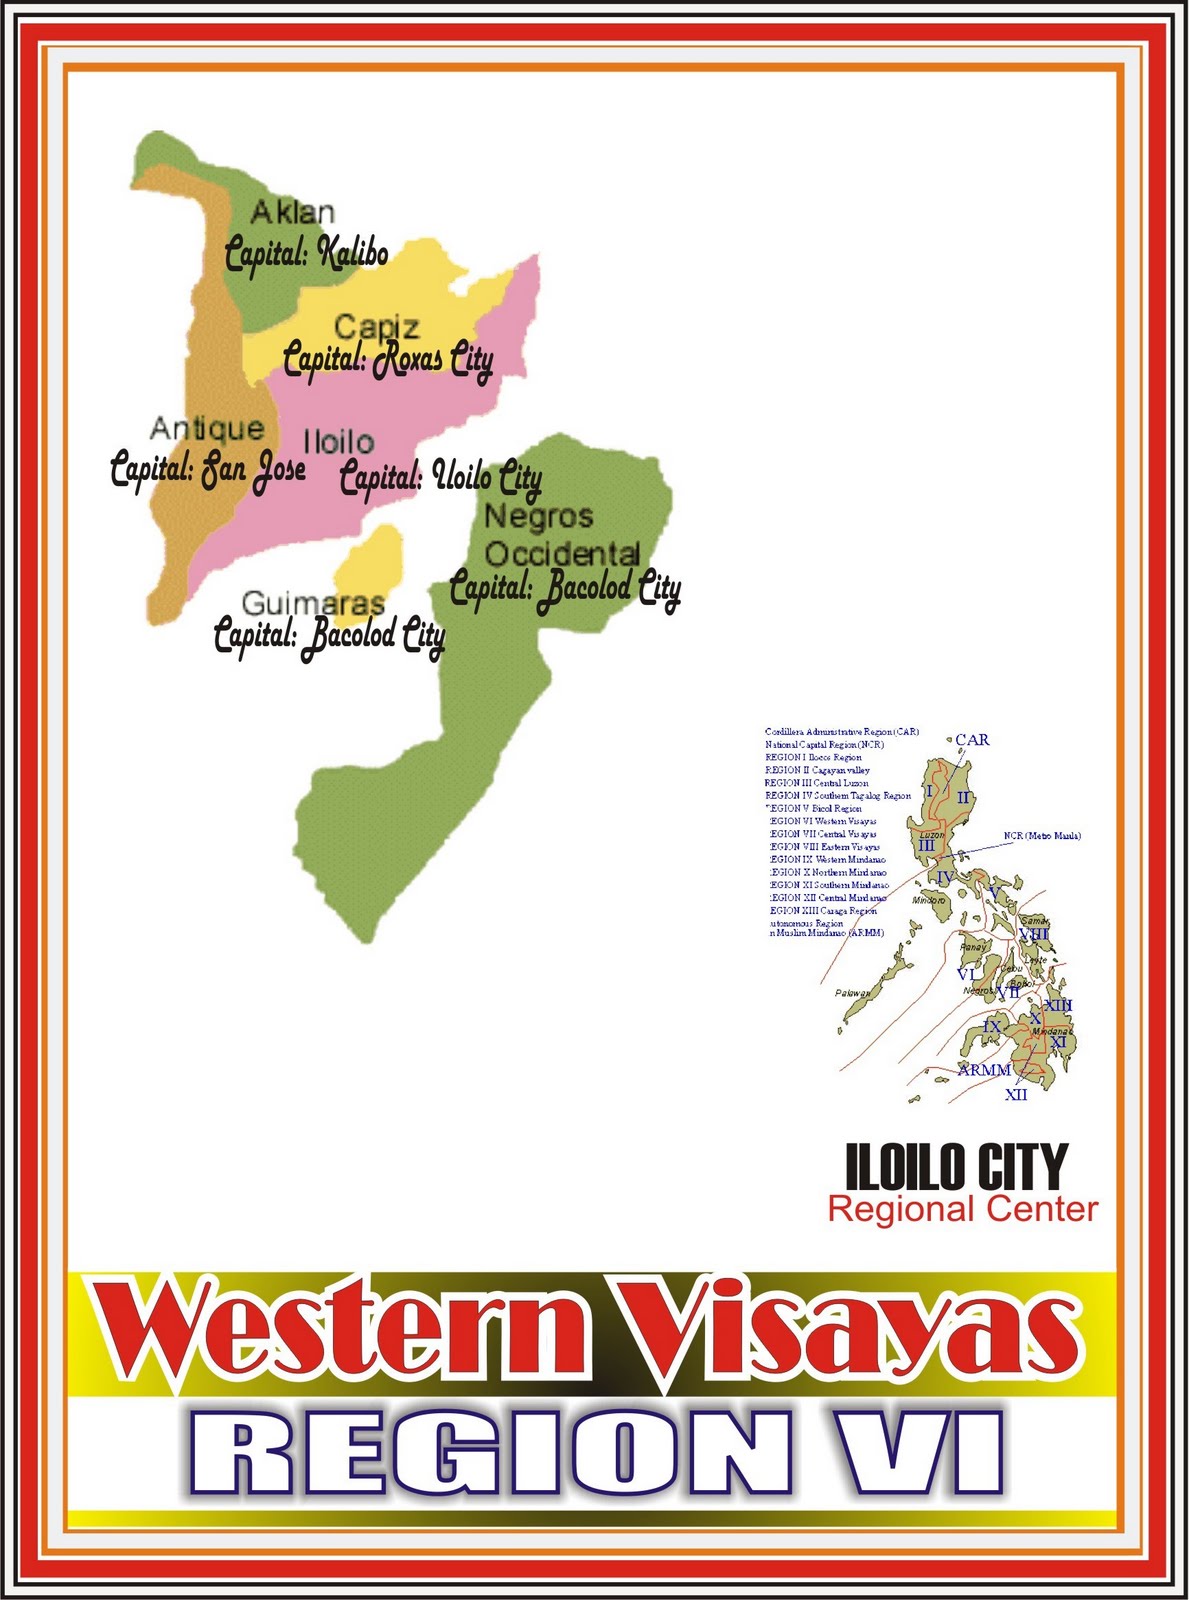 Ilocos Region Location Map